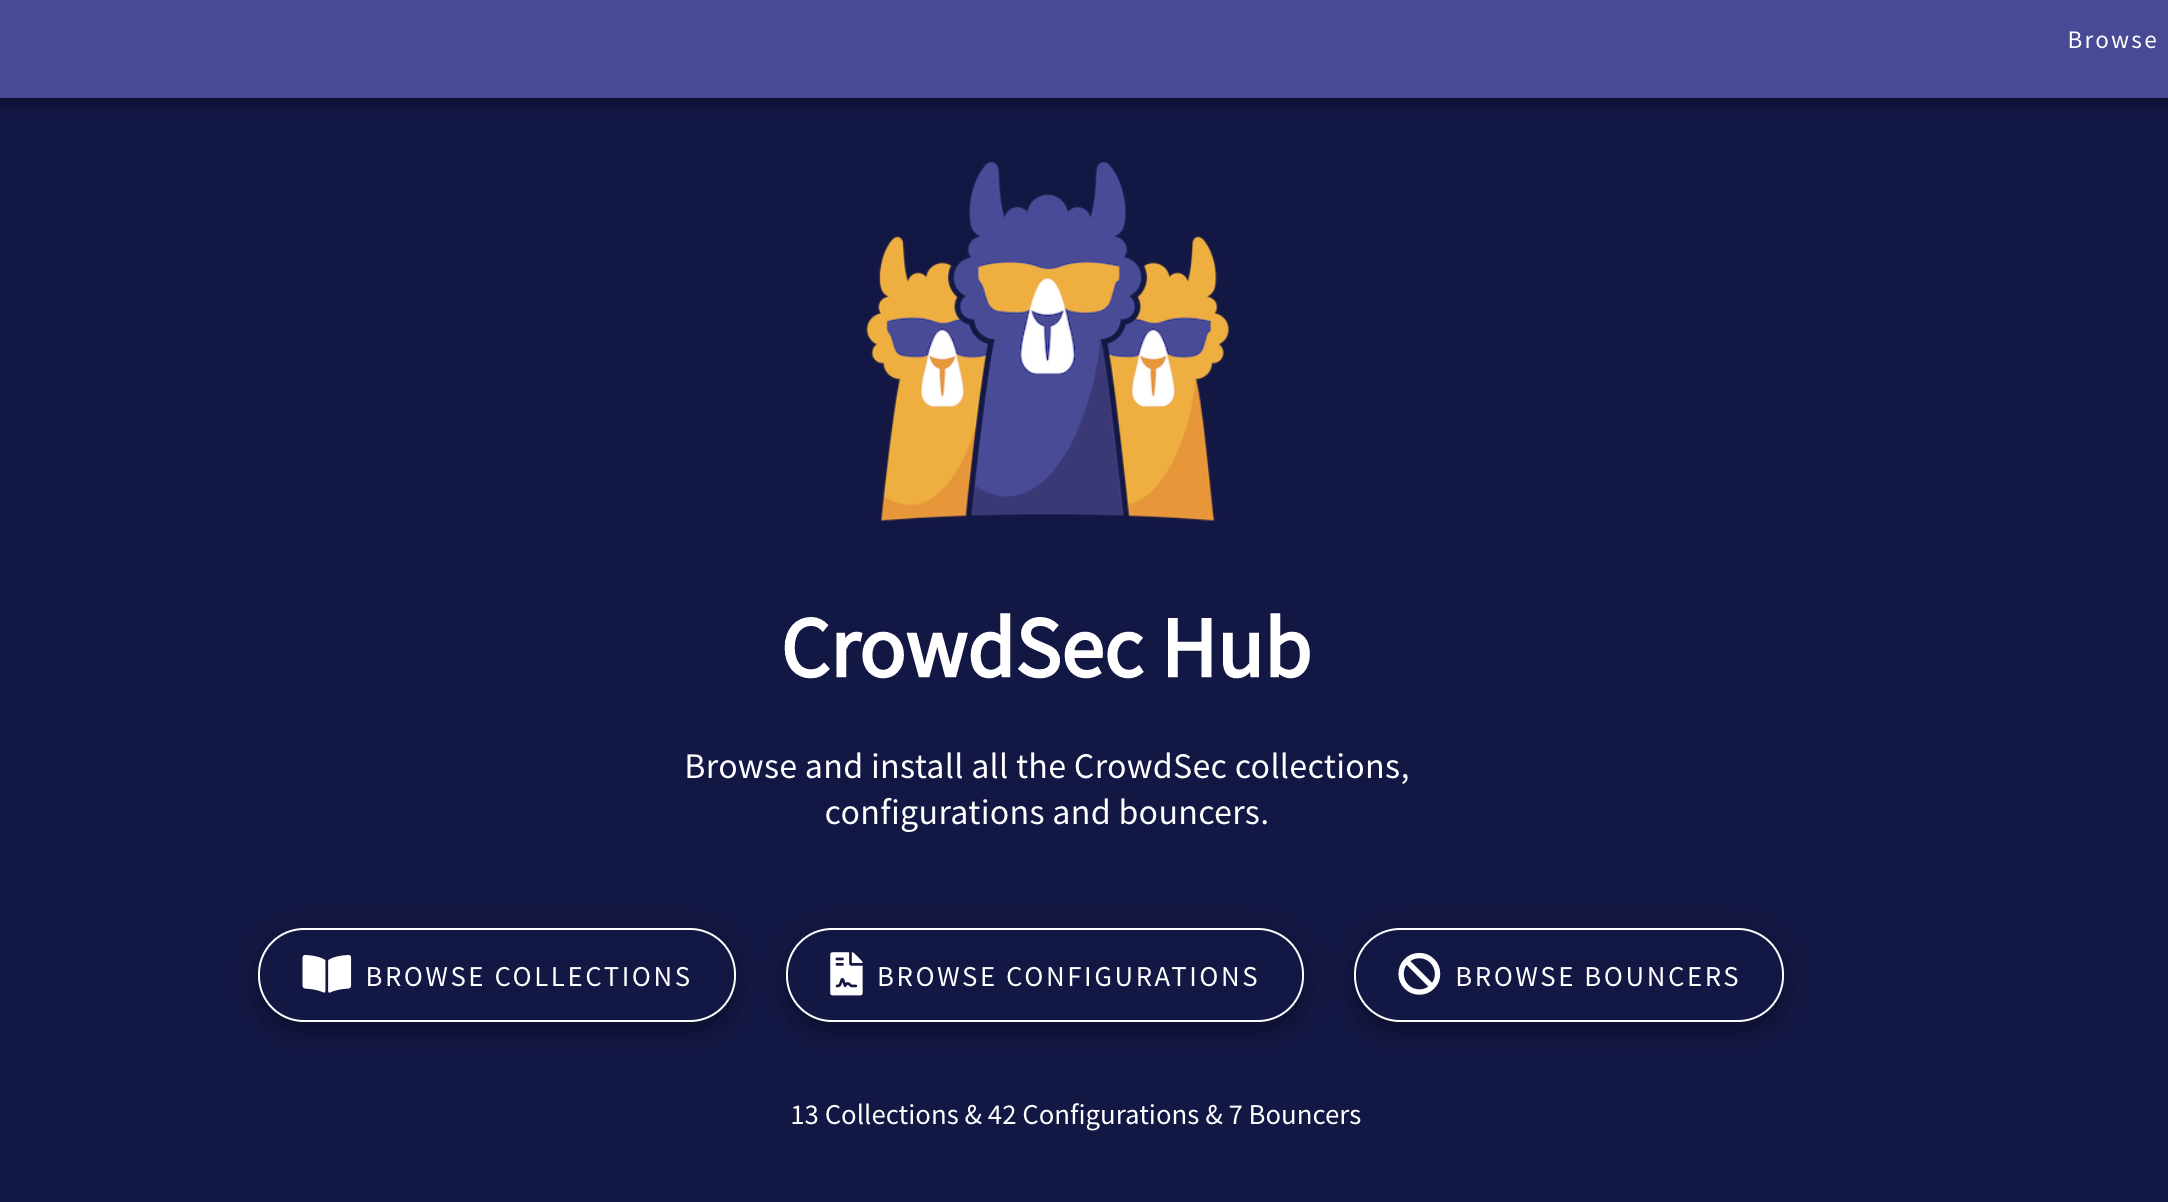 The CrowdSec Hub homepage